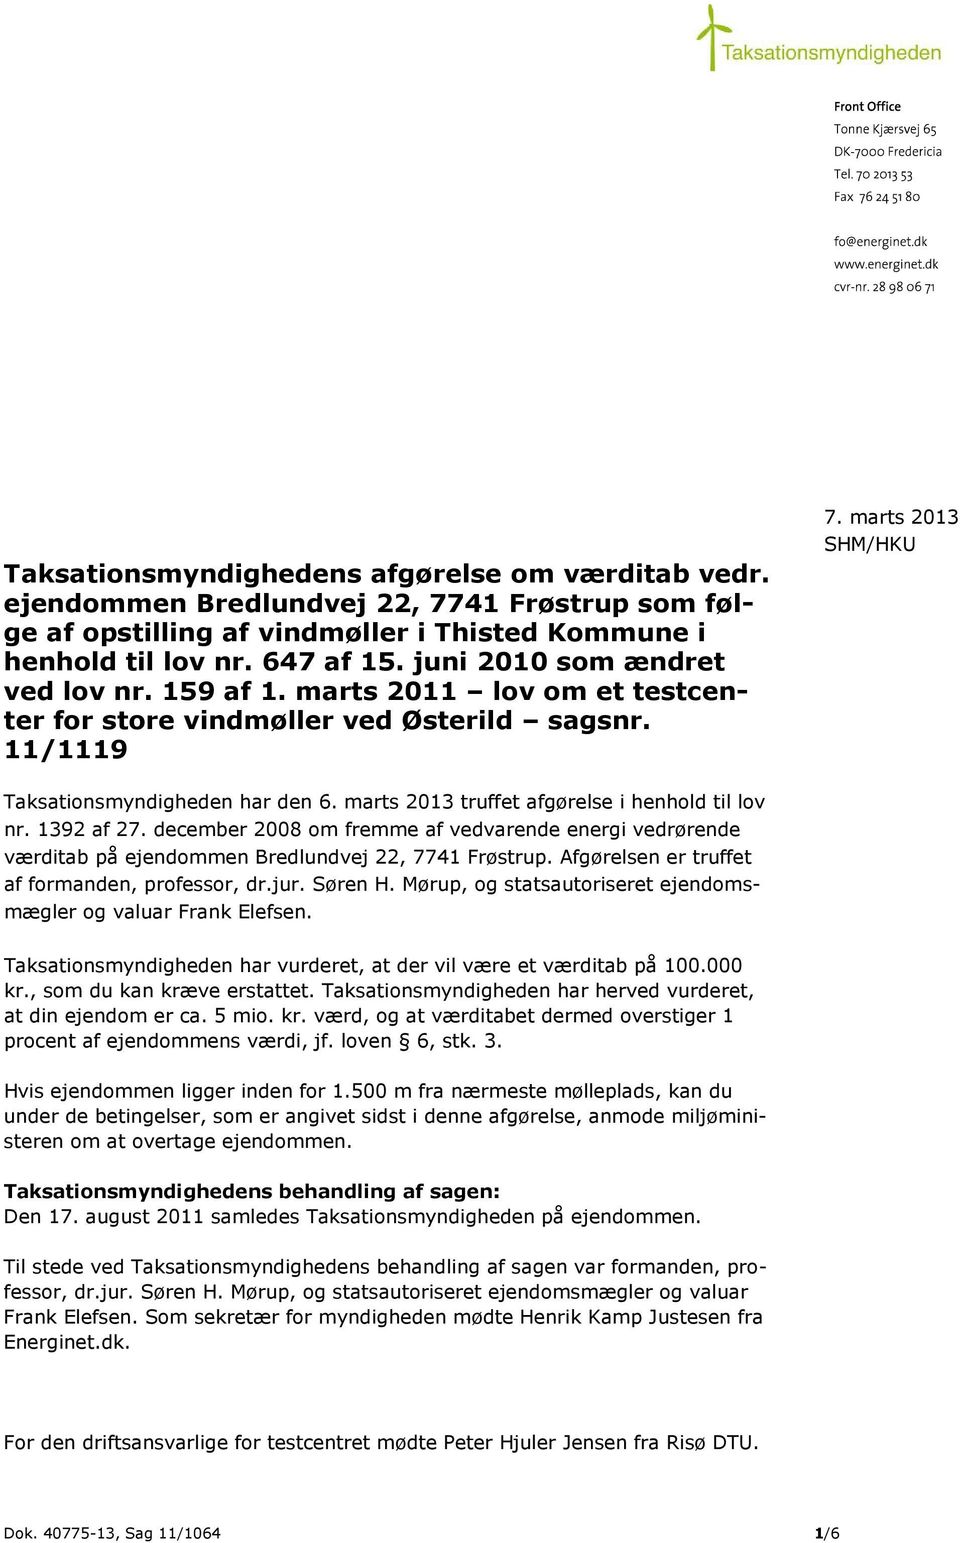 marts 2013 truffet afgørelse i henhold til lov nr. 1392 af 27. december 2008 om fremme af vedvarende energi vedrørende værditab på ejendommen Bredlundvej 22, 7741 Frøstrup.